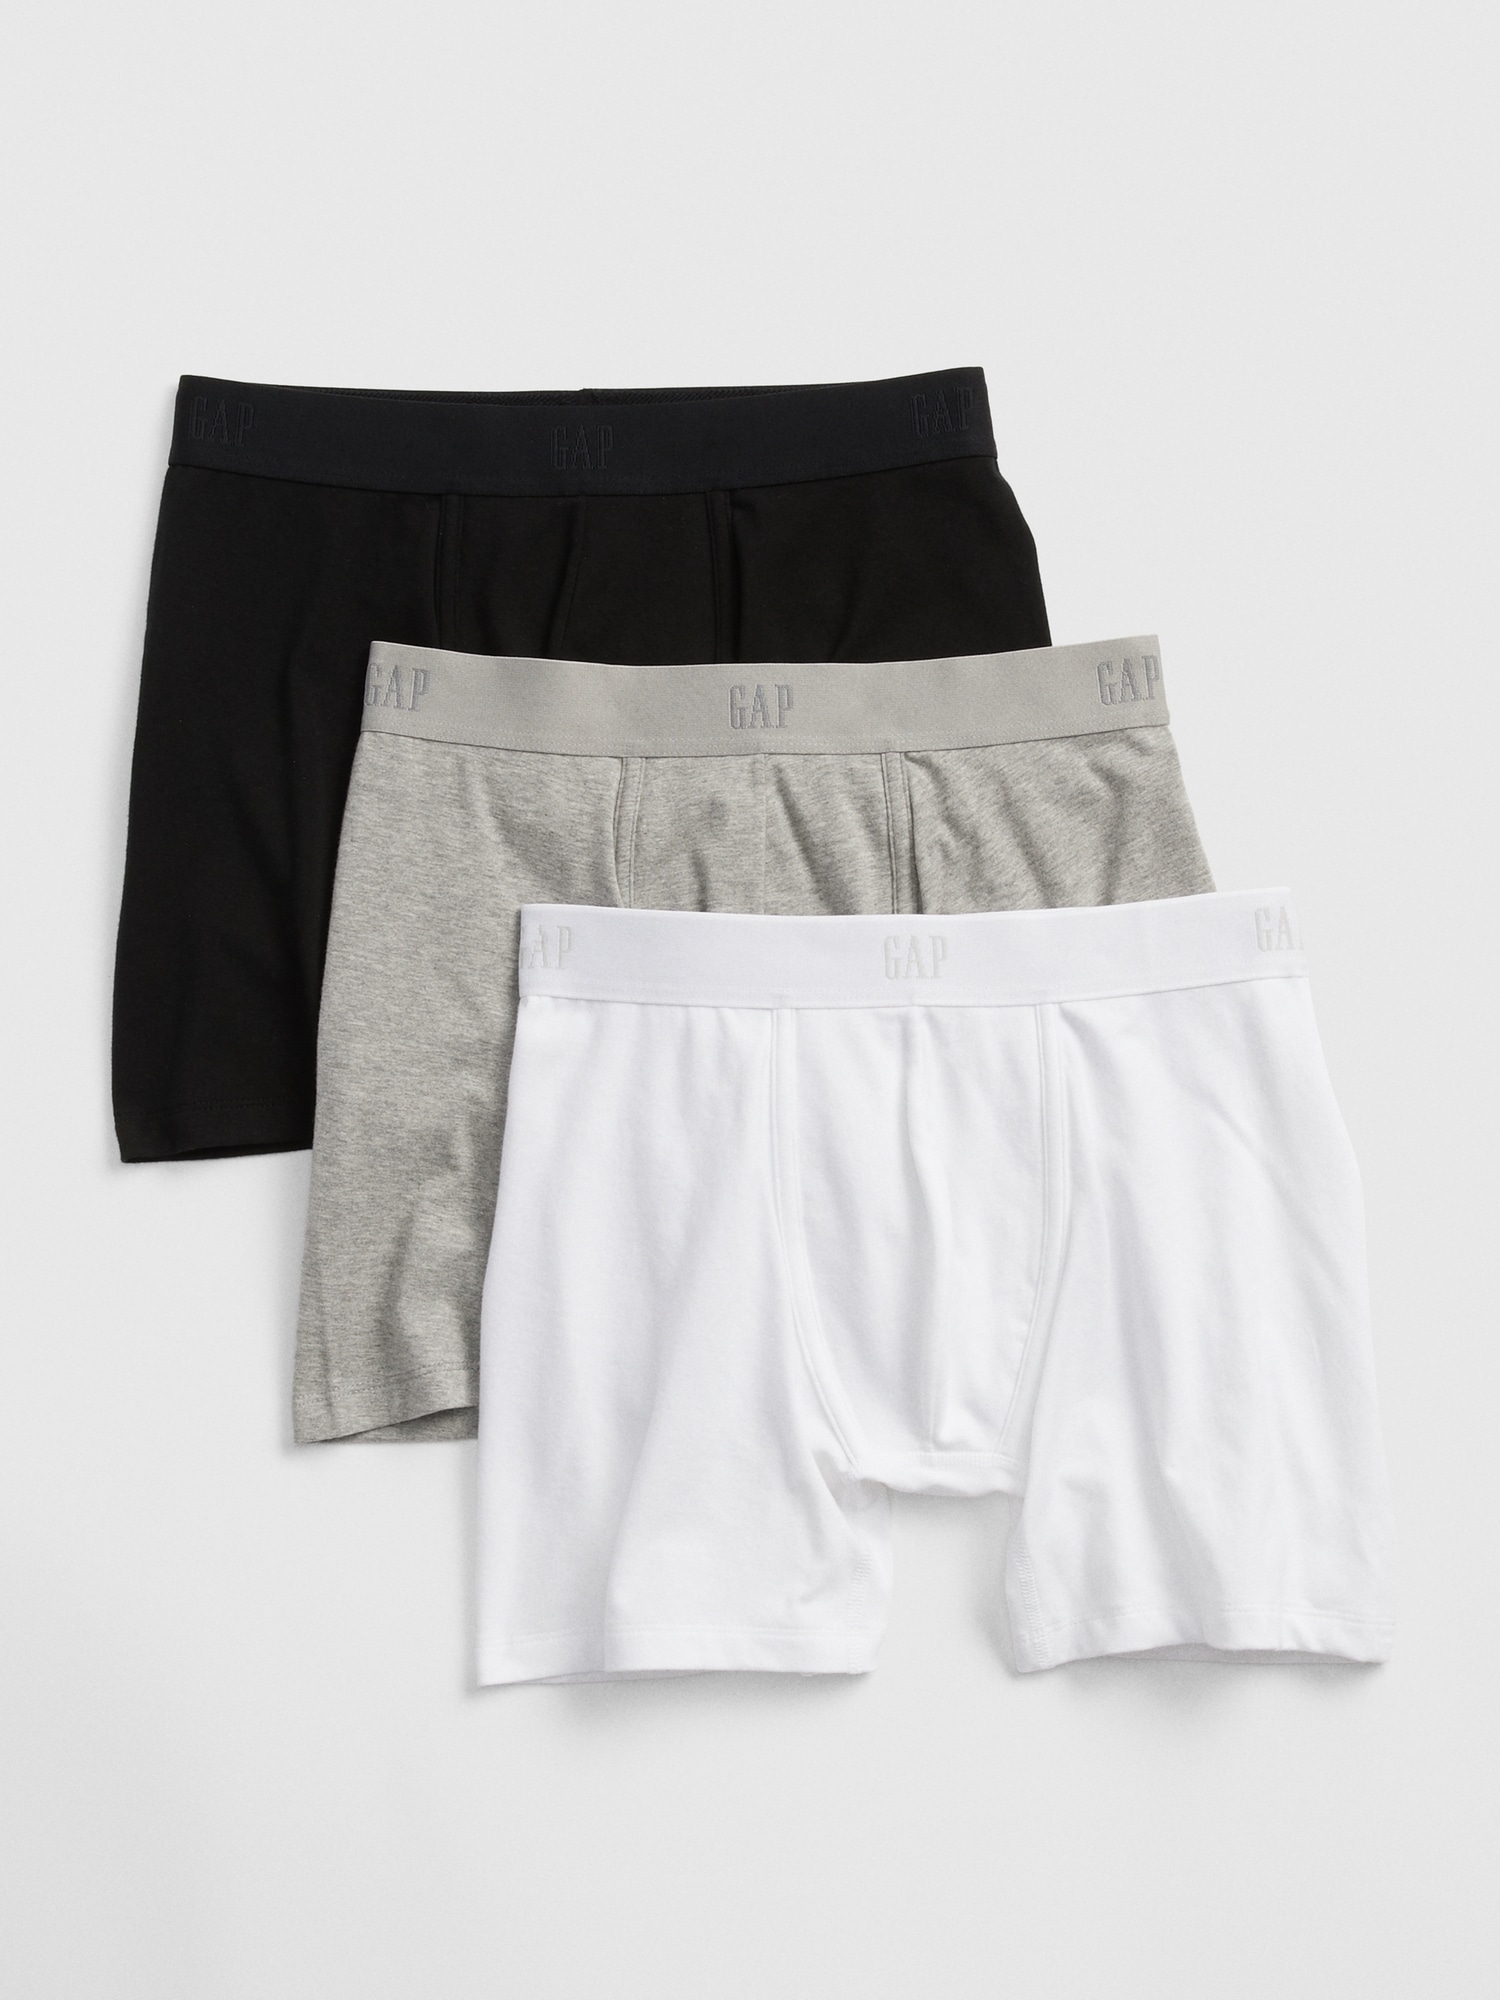 95% Cotton 5% Spandex Man Underwear Black Men's Underwear/Brief, Size (L)